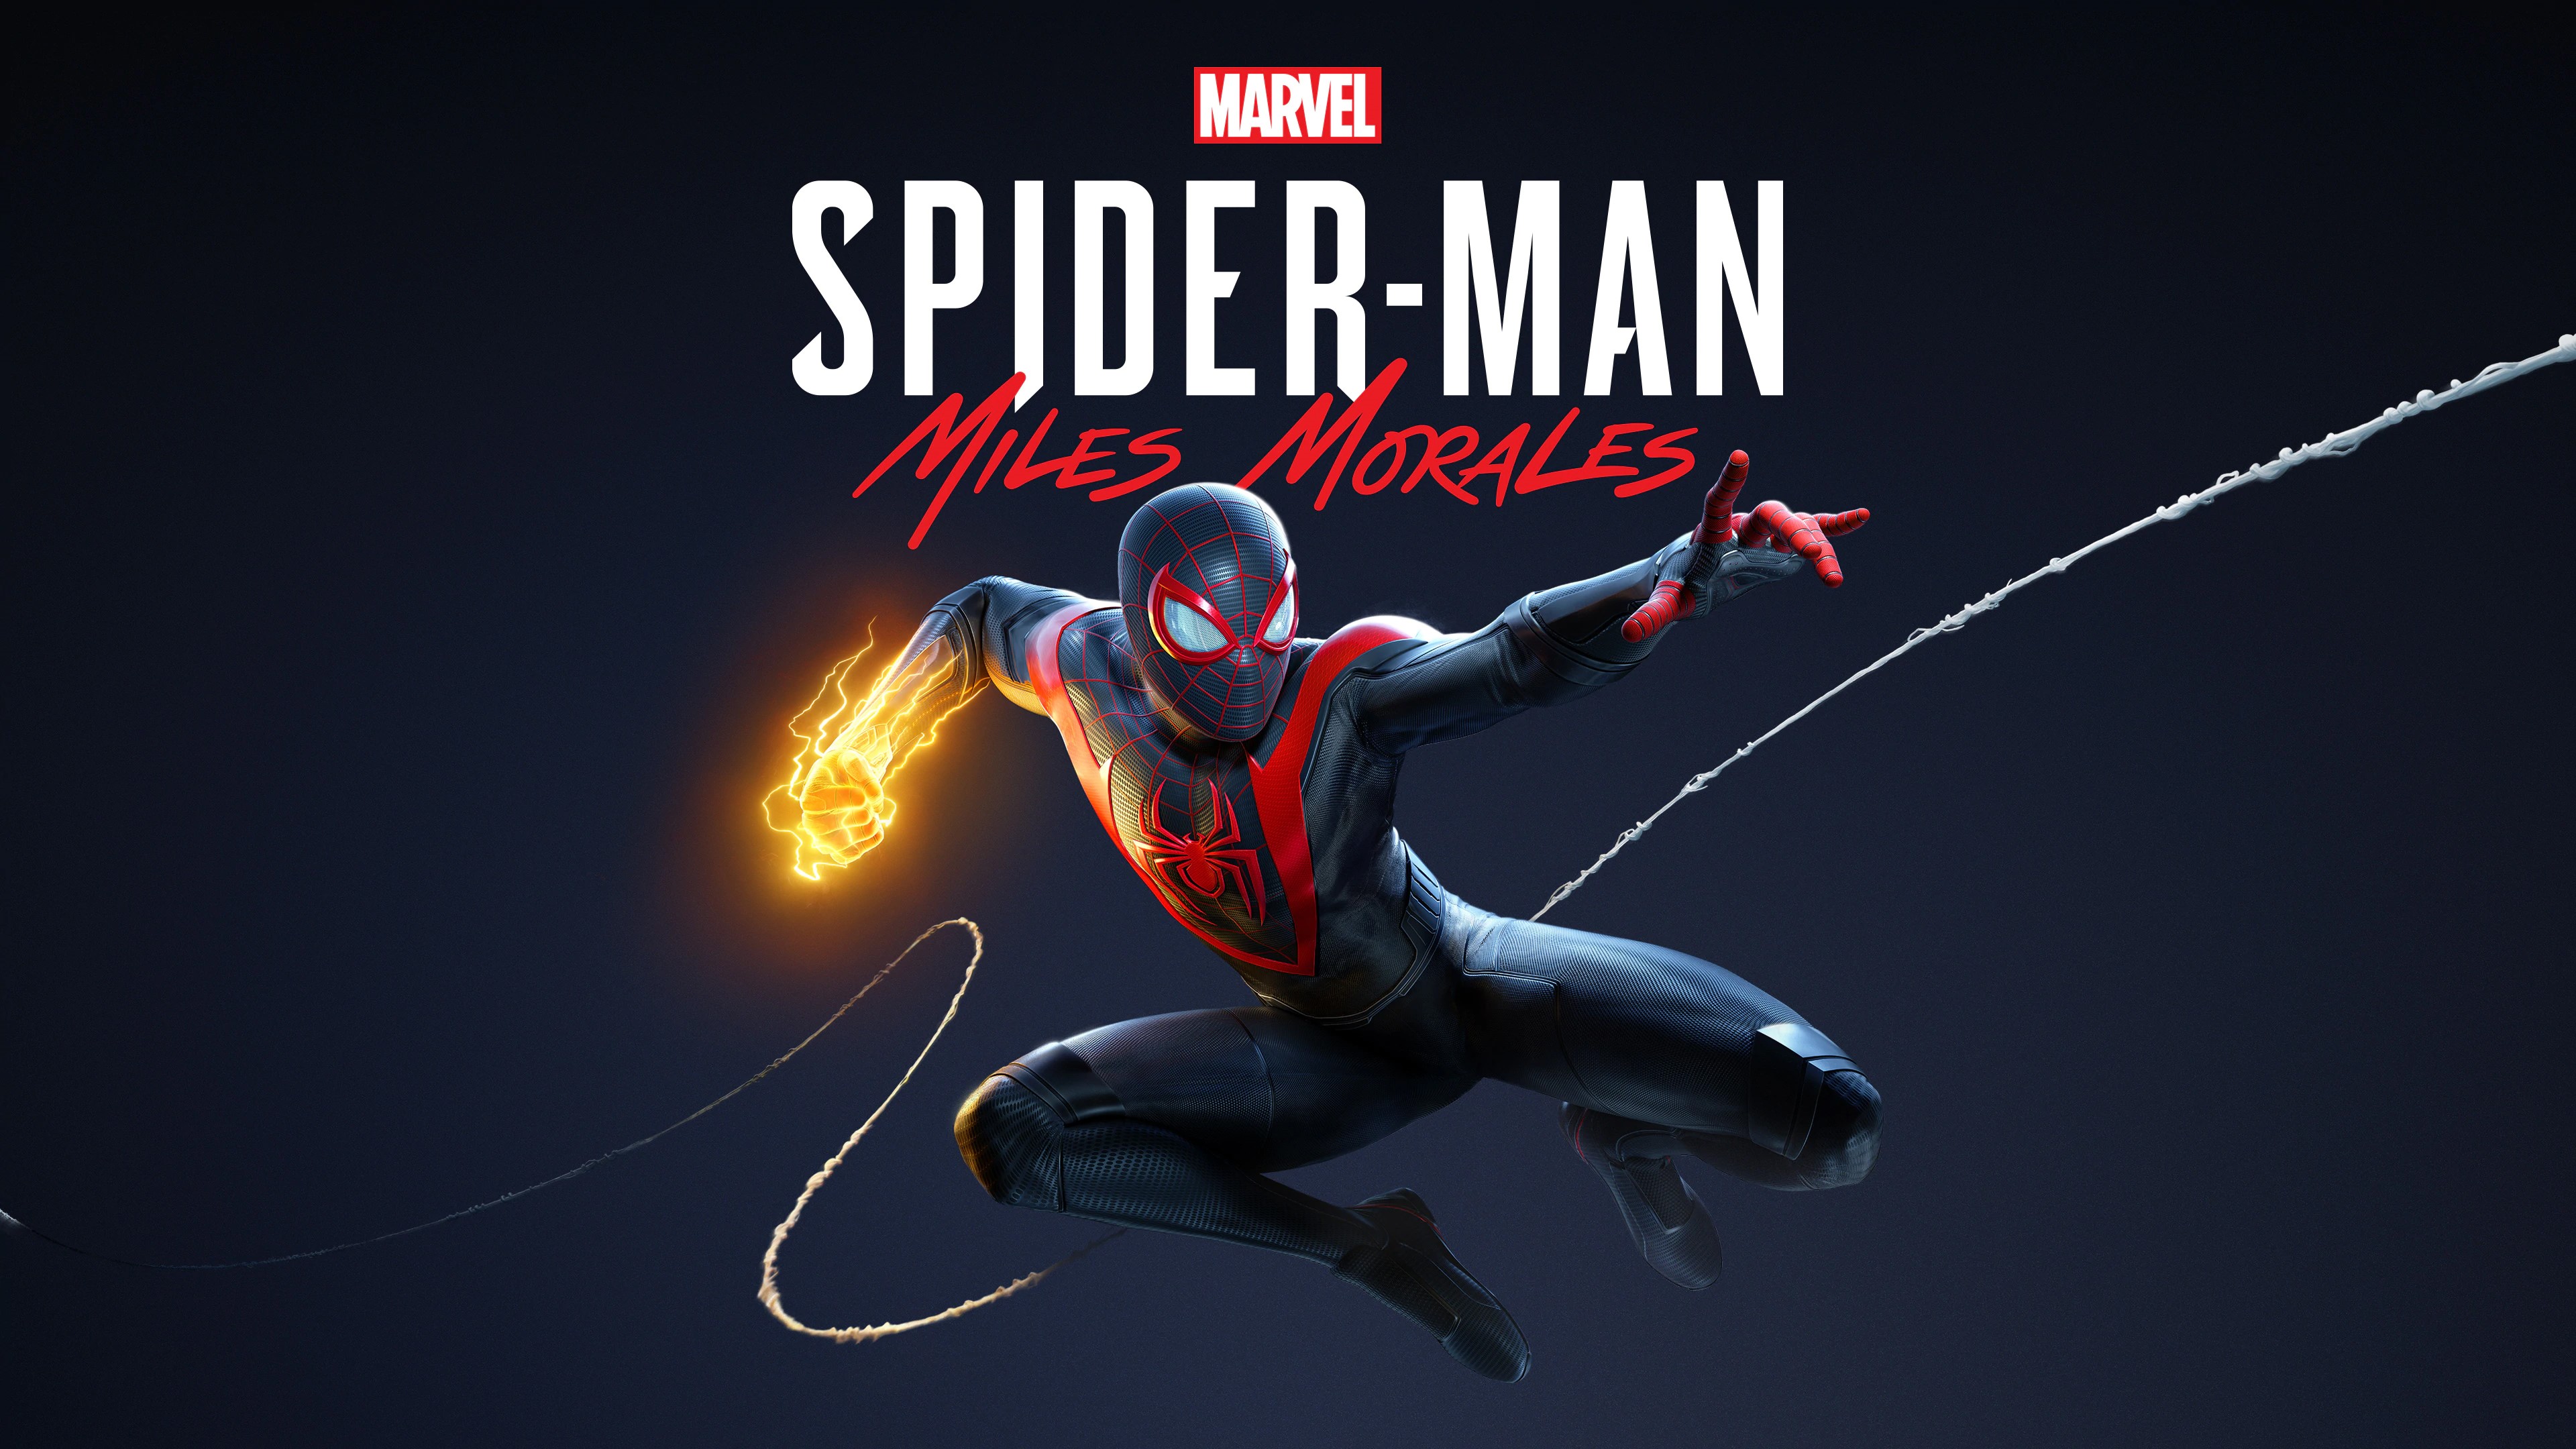 Marvel's Человек-паук /// Spider-Man: Miles Morales ( прохождение 17 )